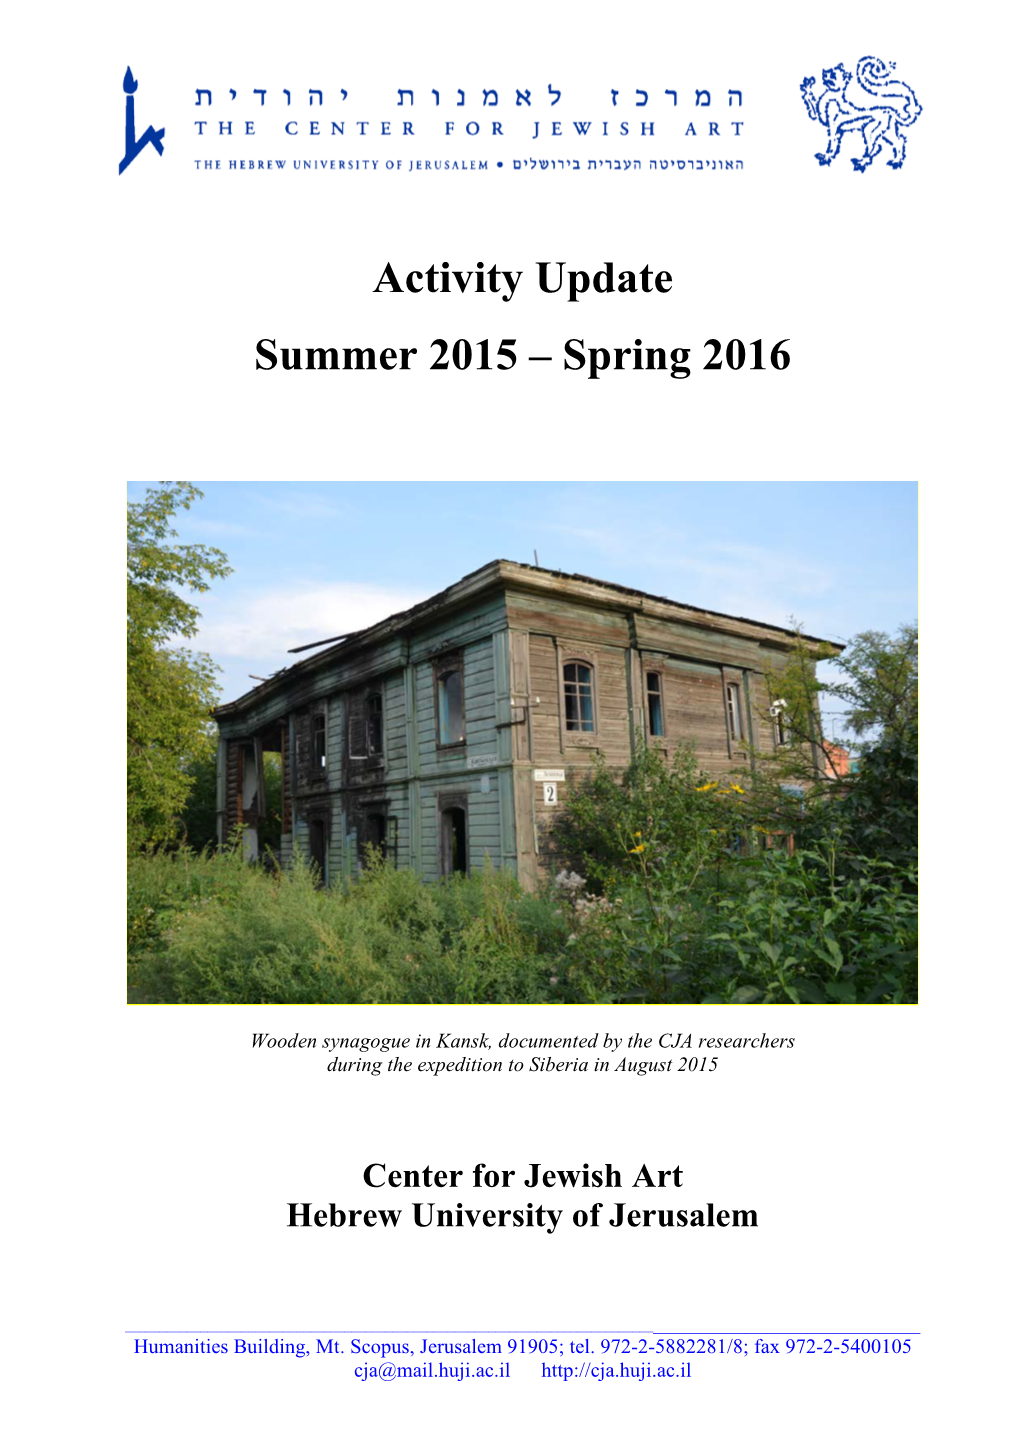 Activity Update Summer 2015 – Spring 2016